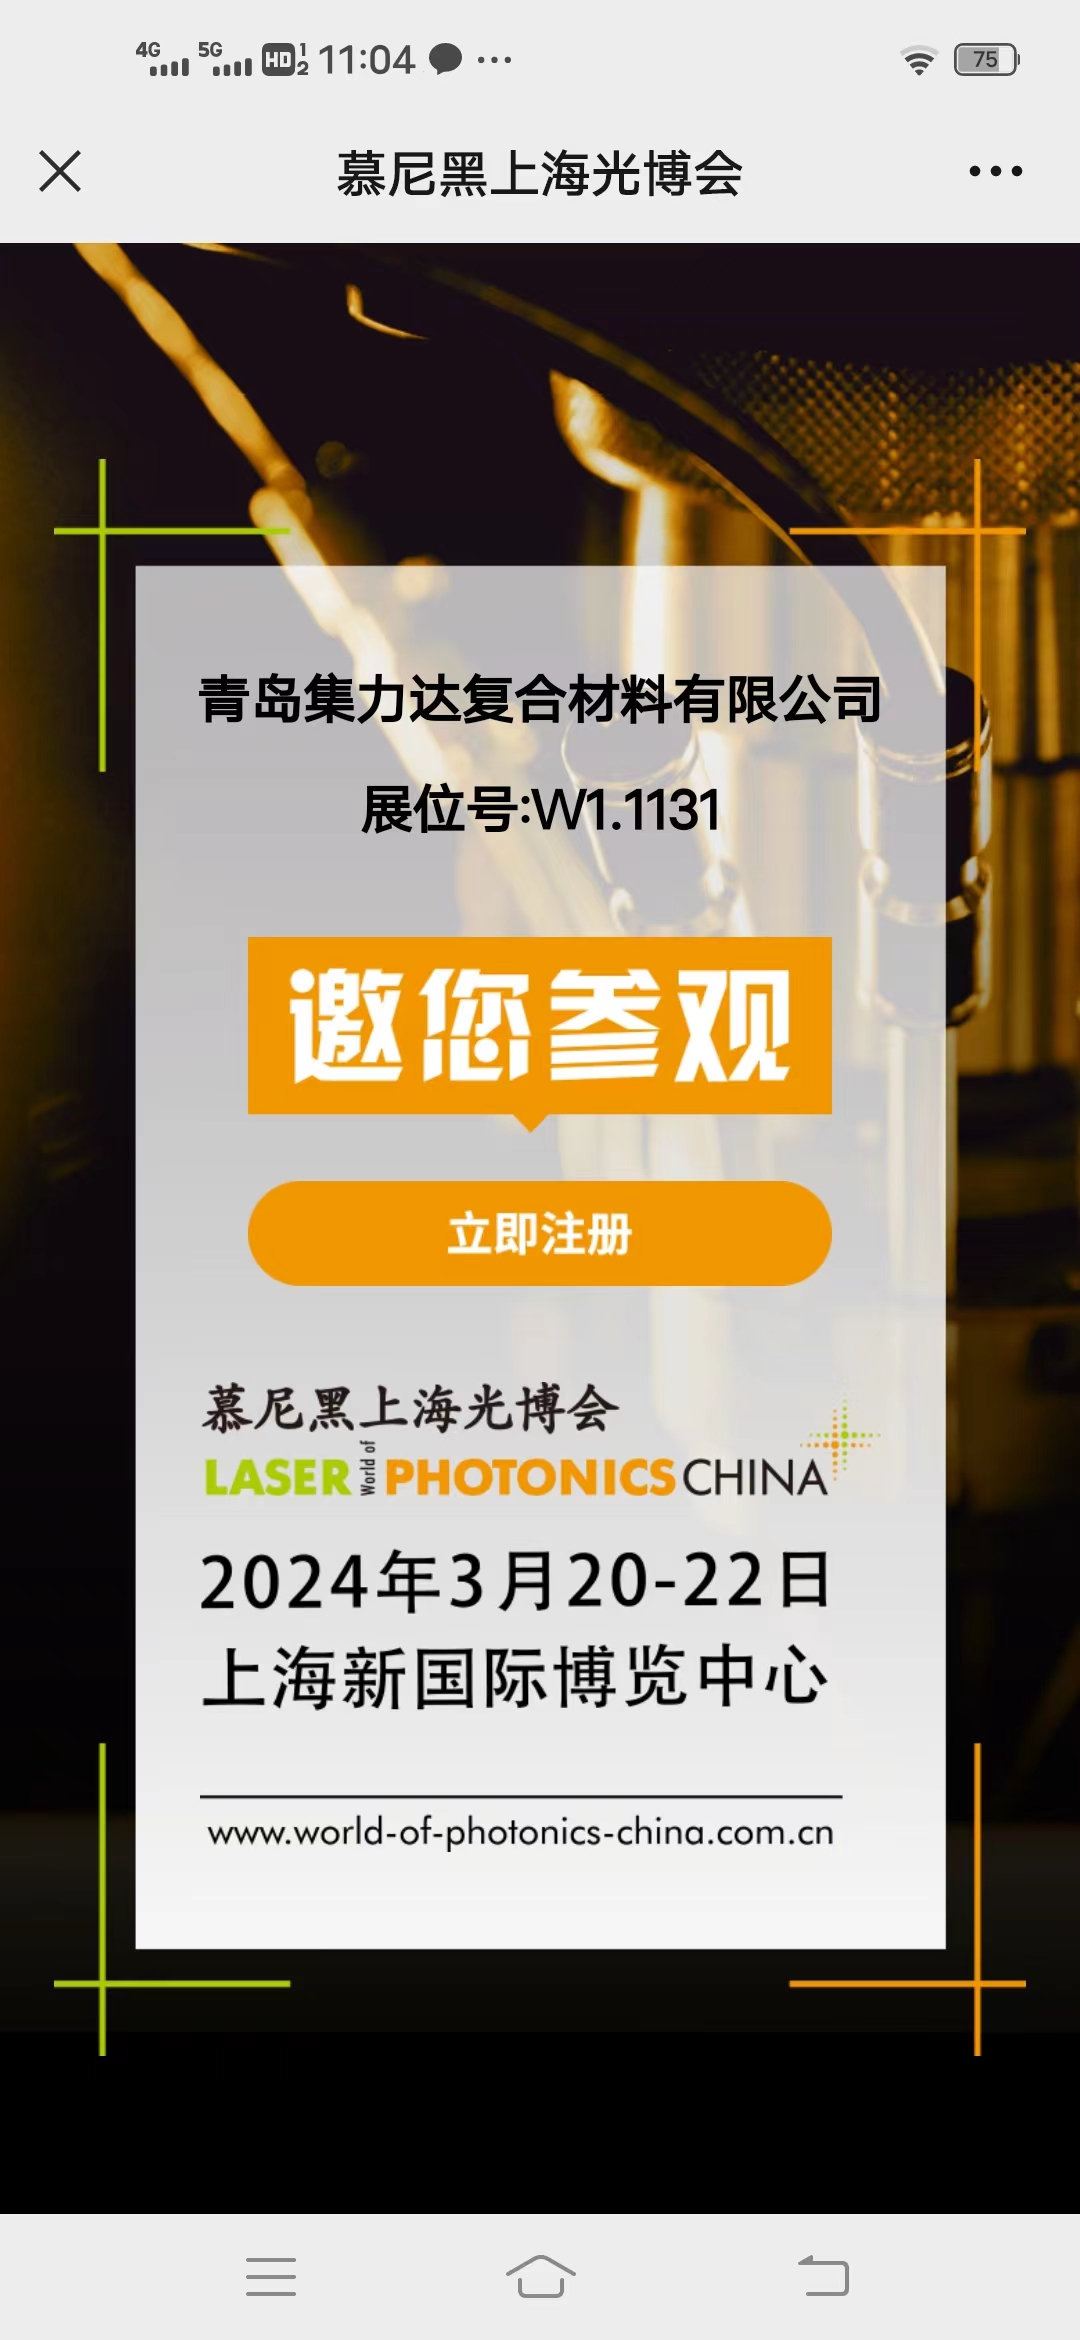 Encantado de reunirse en Laser China 2024